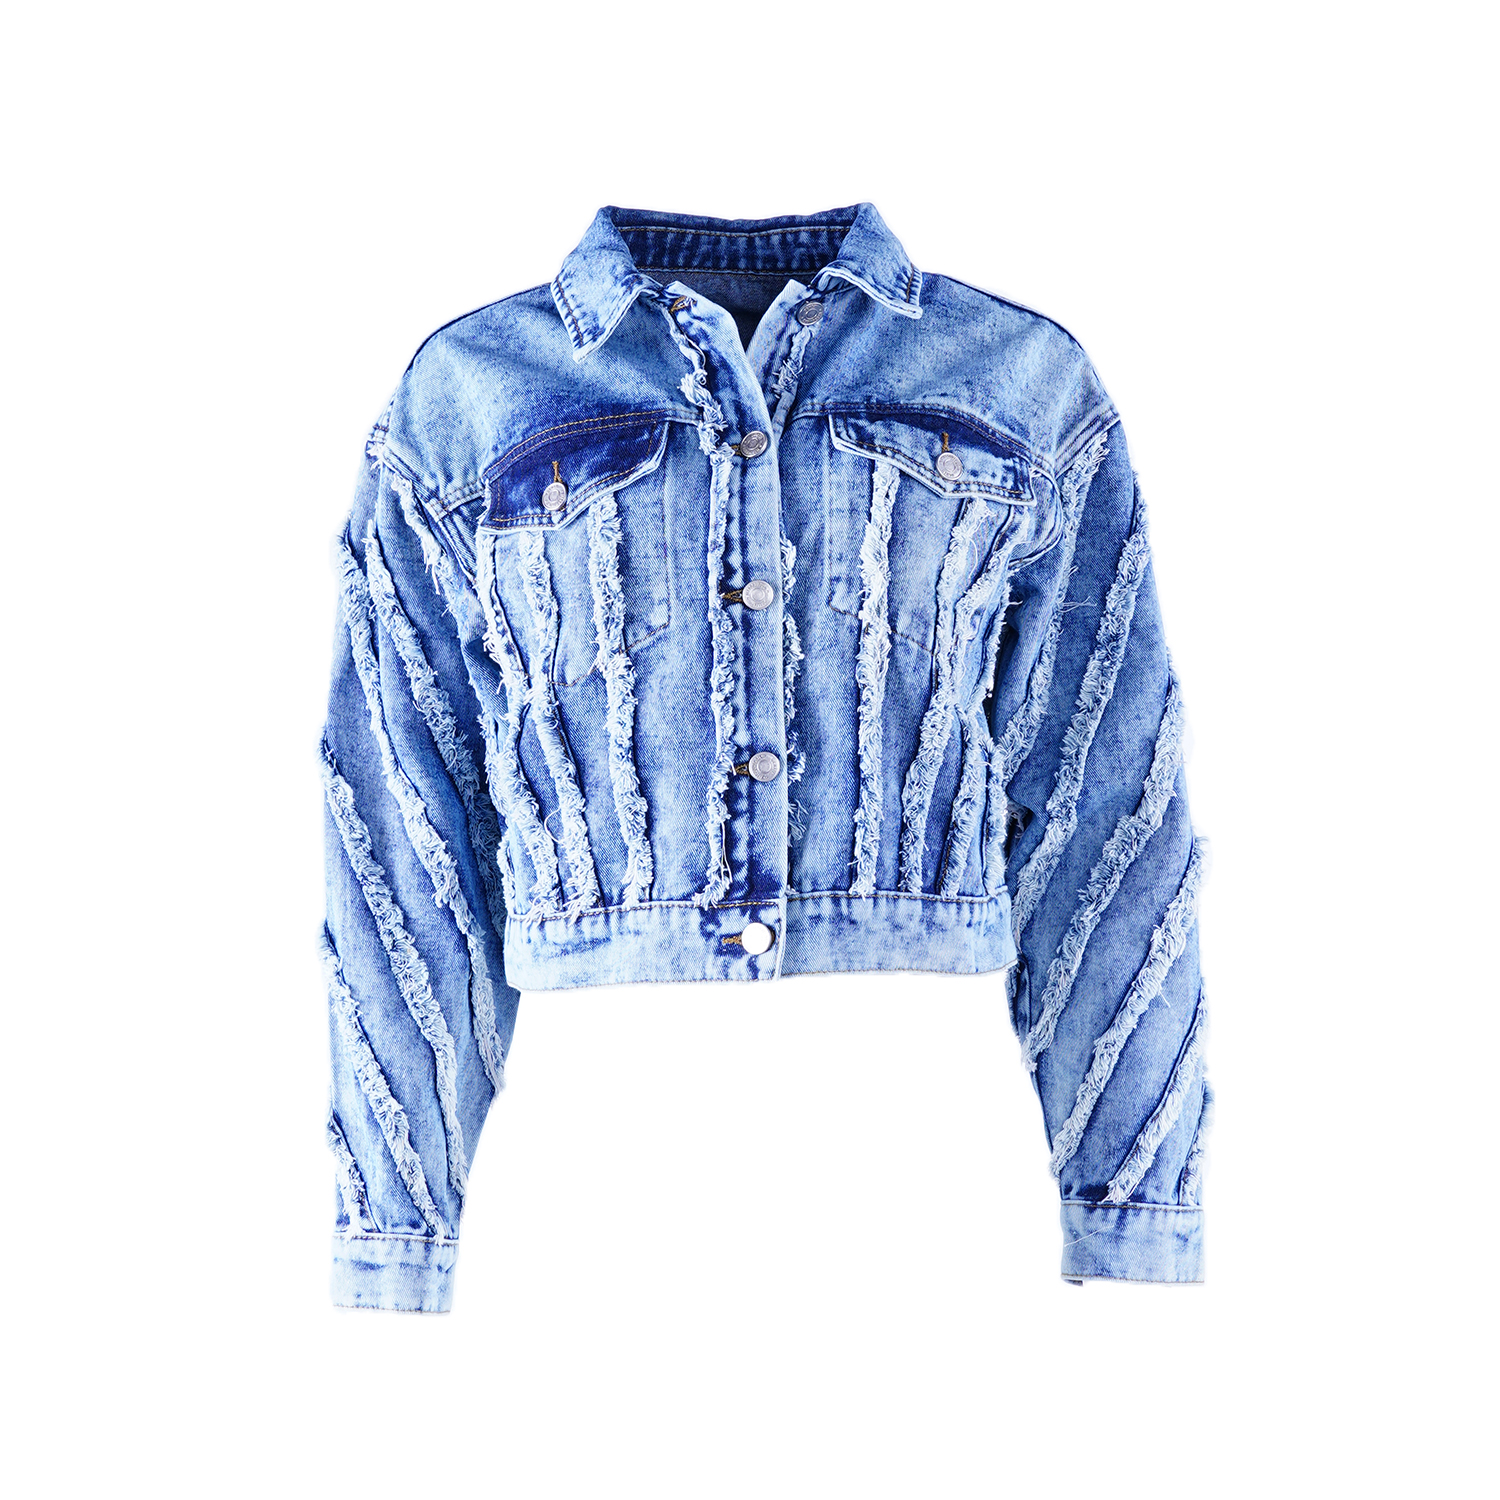 SKYKINGDOM new design jeans jacket outdoor wear denim blue stripe tassel design women jackets